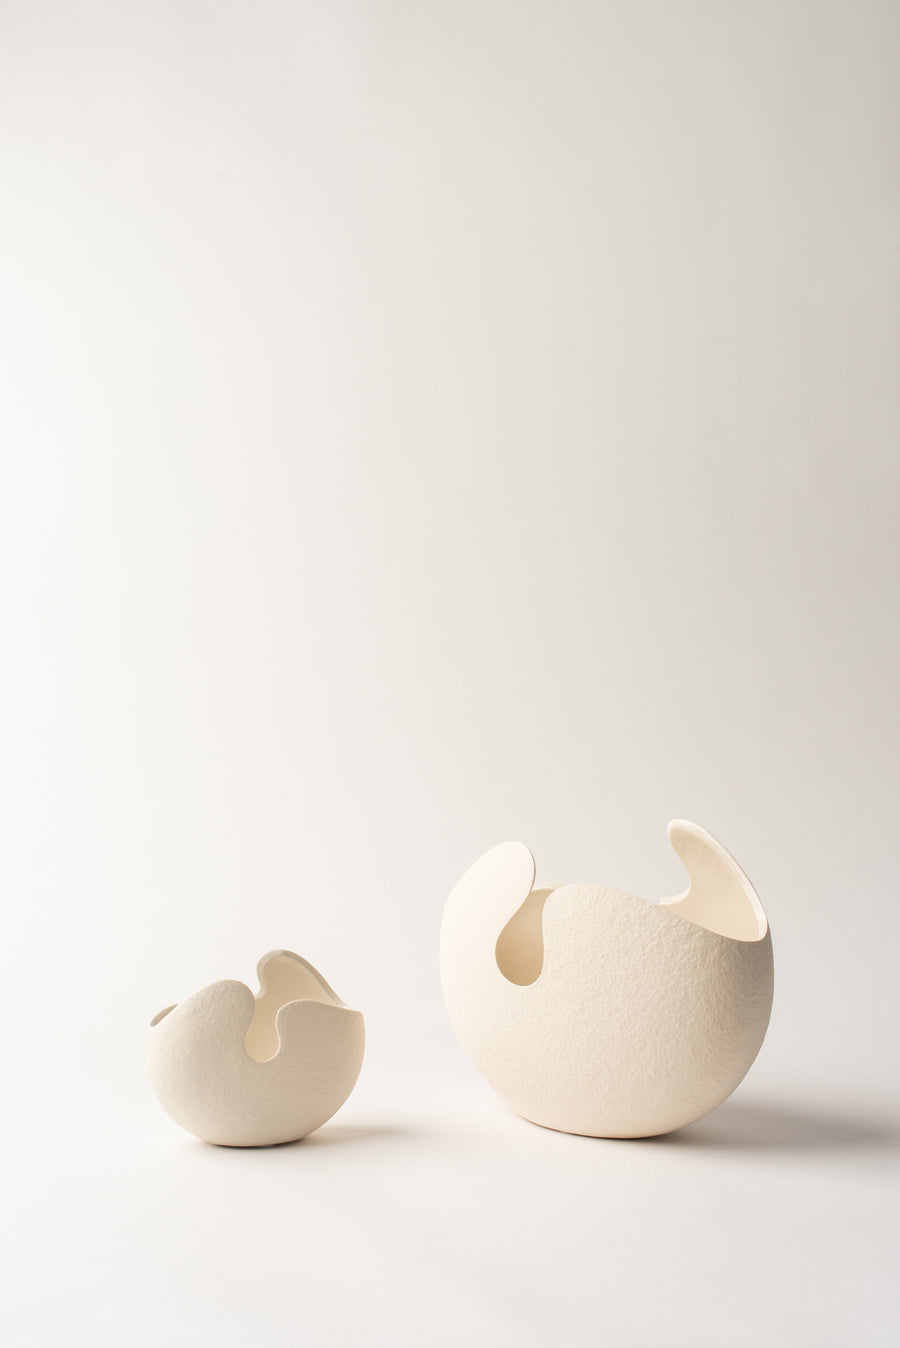 Shell Vases - White